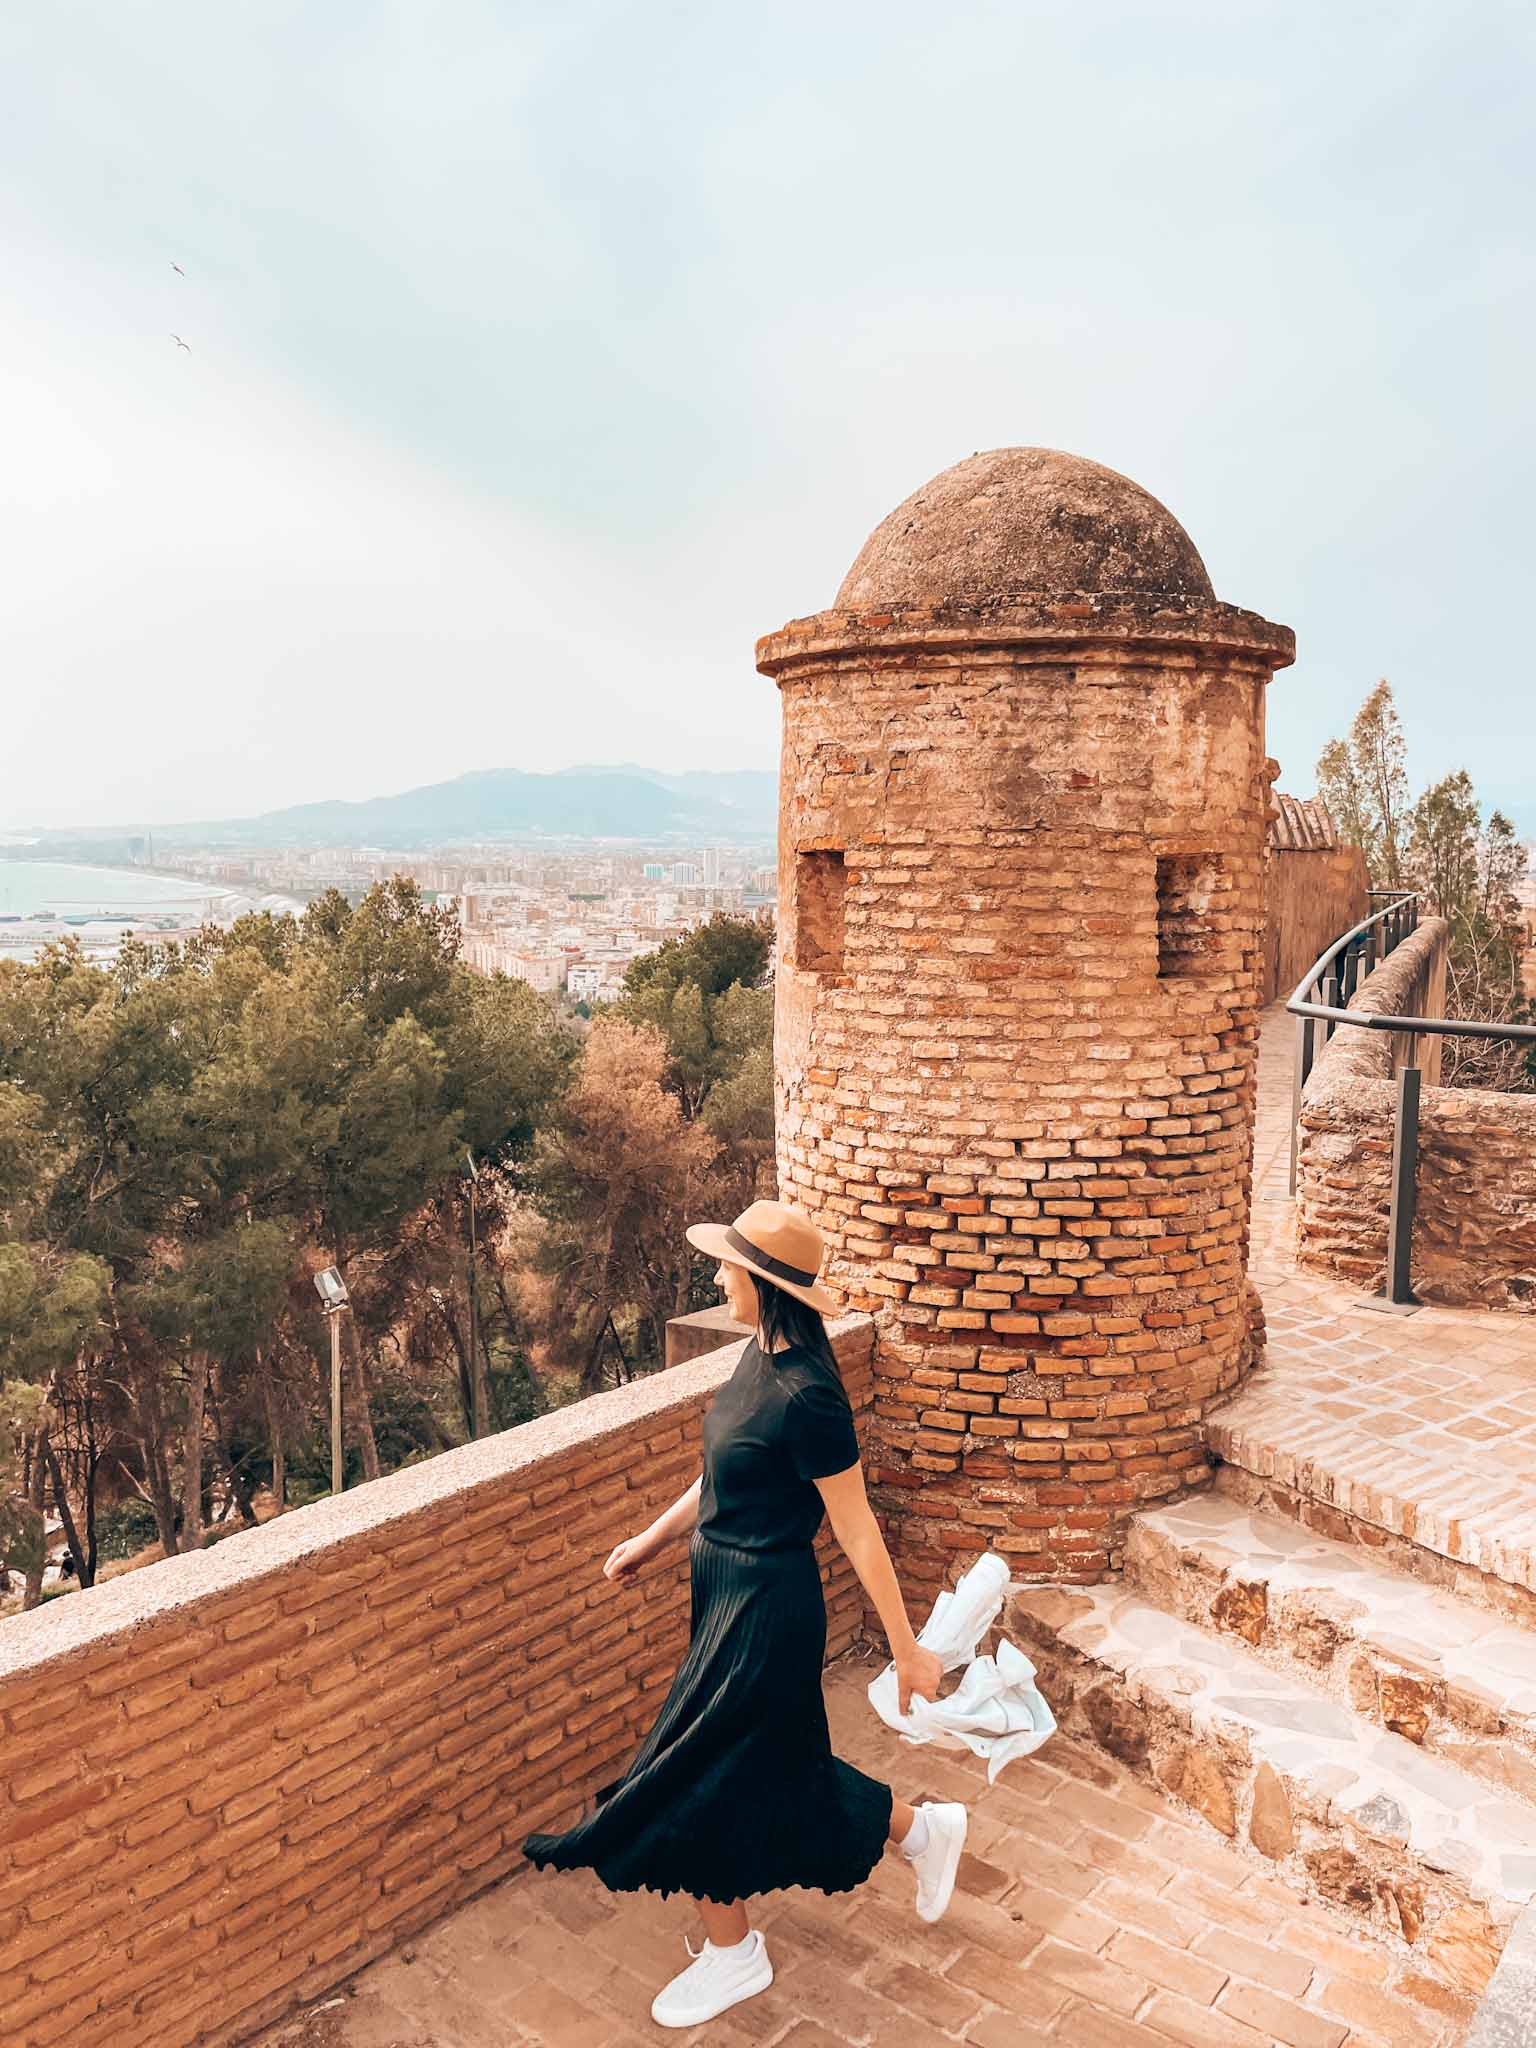 Best Instagram spots in Malaga, Spain